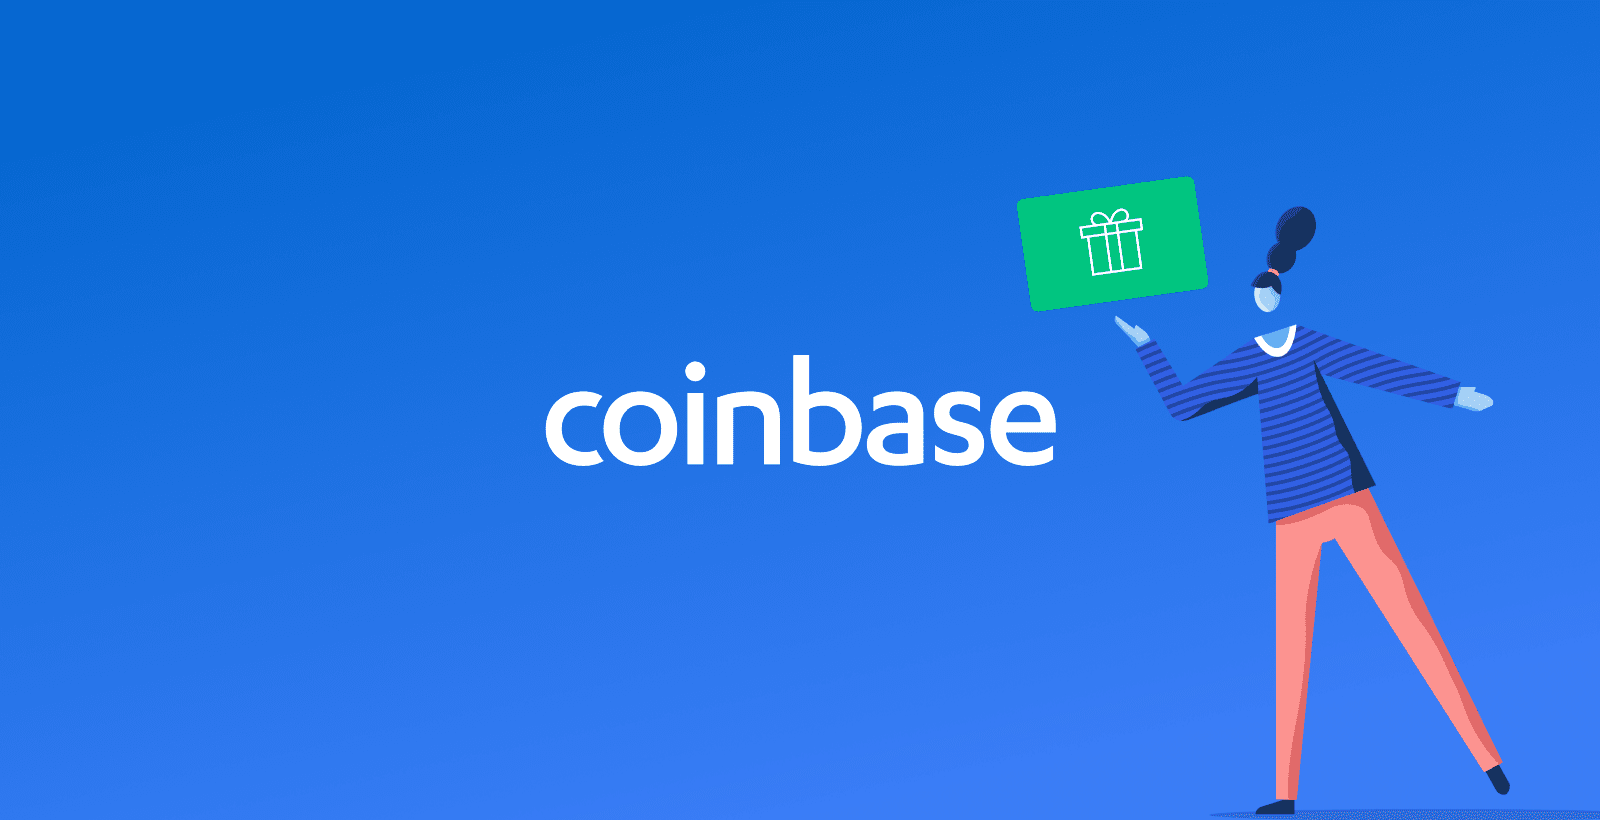 Tháng Bảy đã là một tháng tuyệt vời cho Coinbase